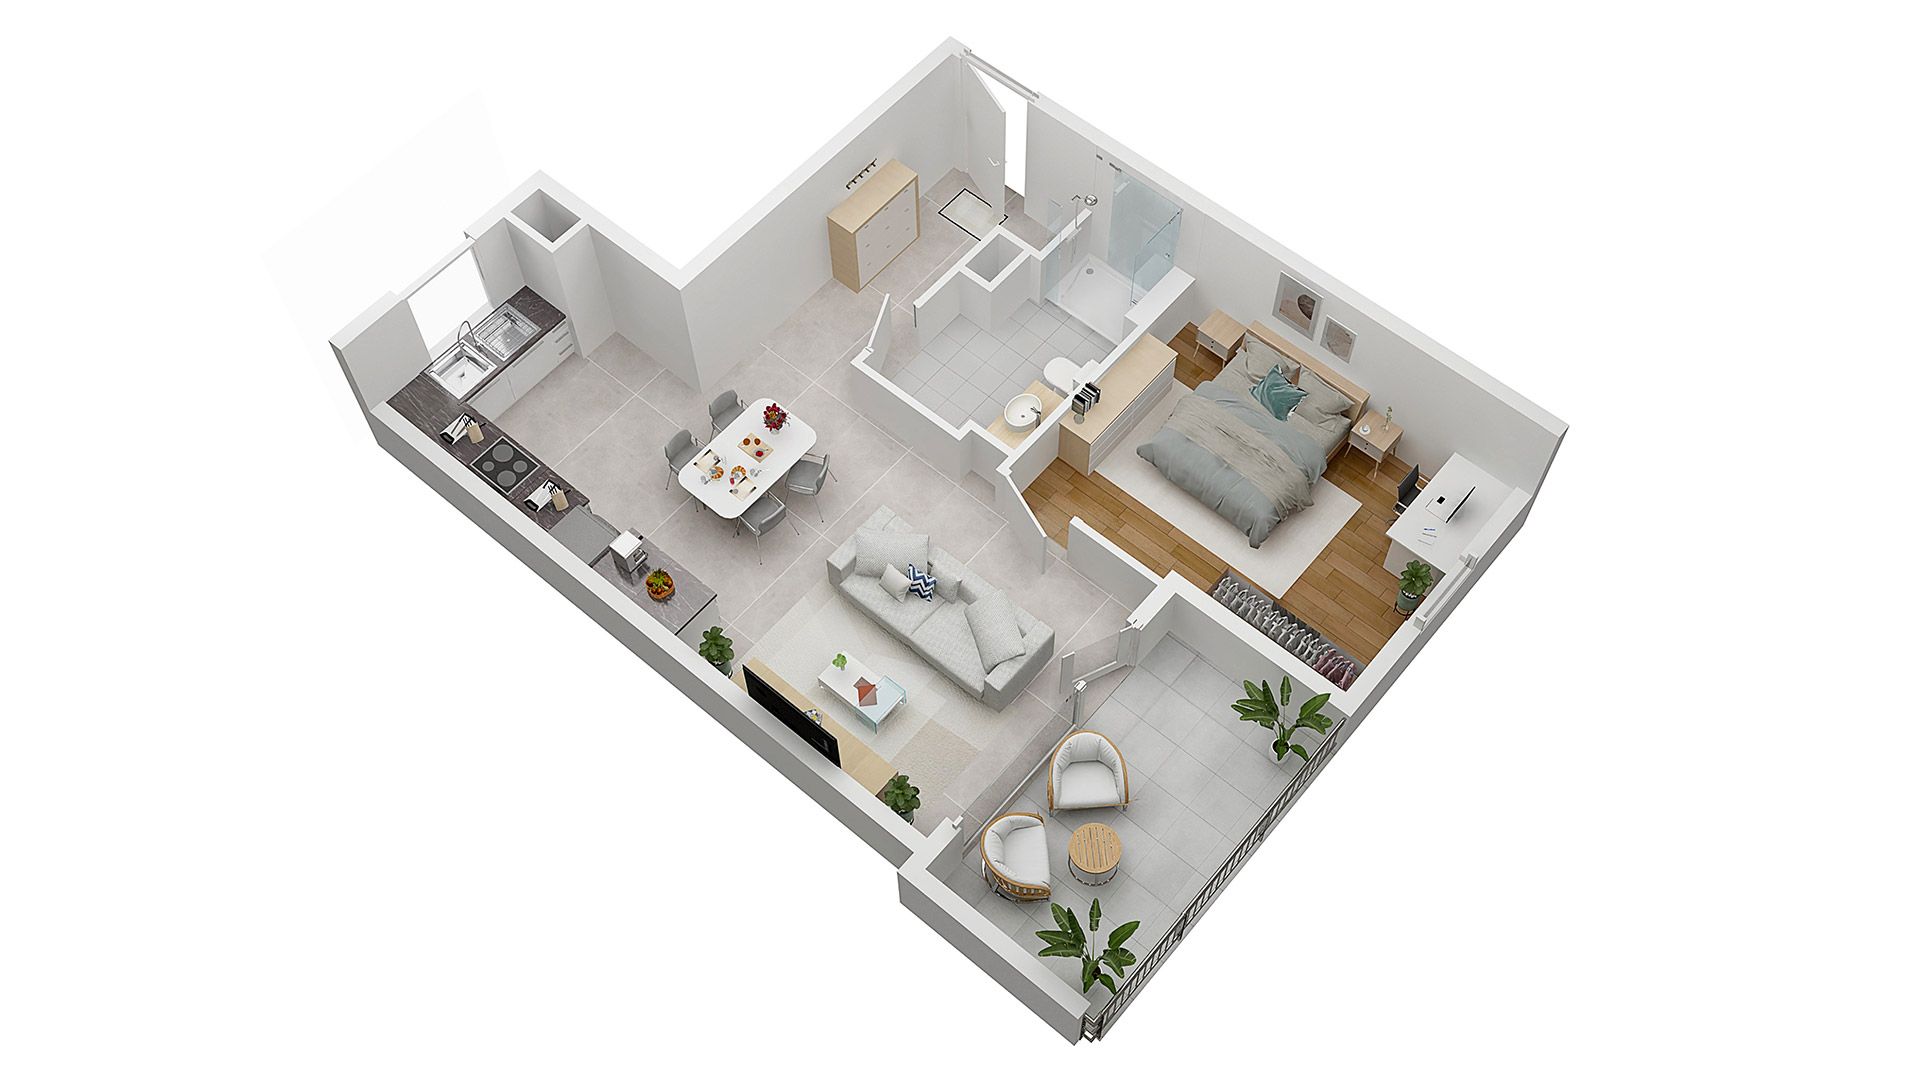 Concept Immobilier - Les Jardins d'Agathe - Appartements neufs à Florange - Axonométrie d'un appartement de type T2